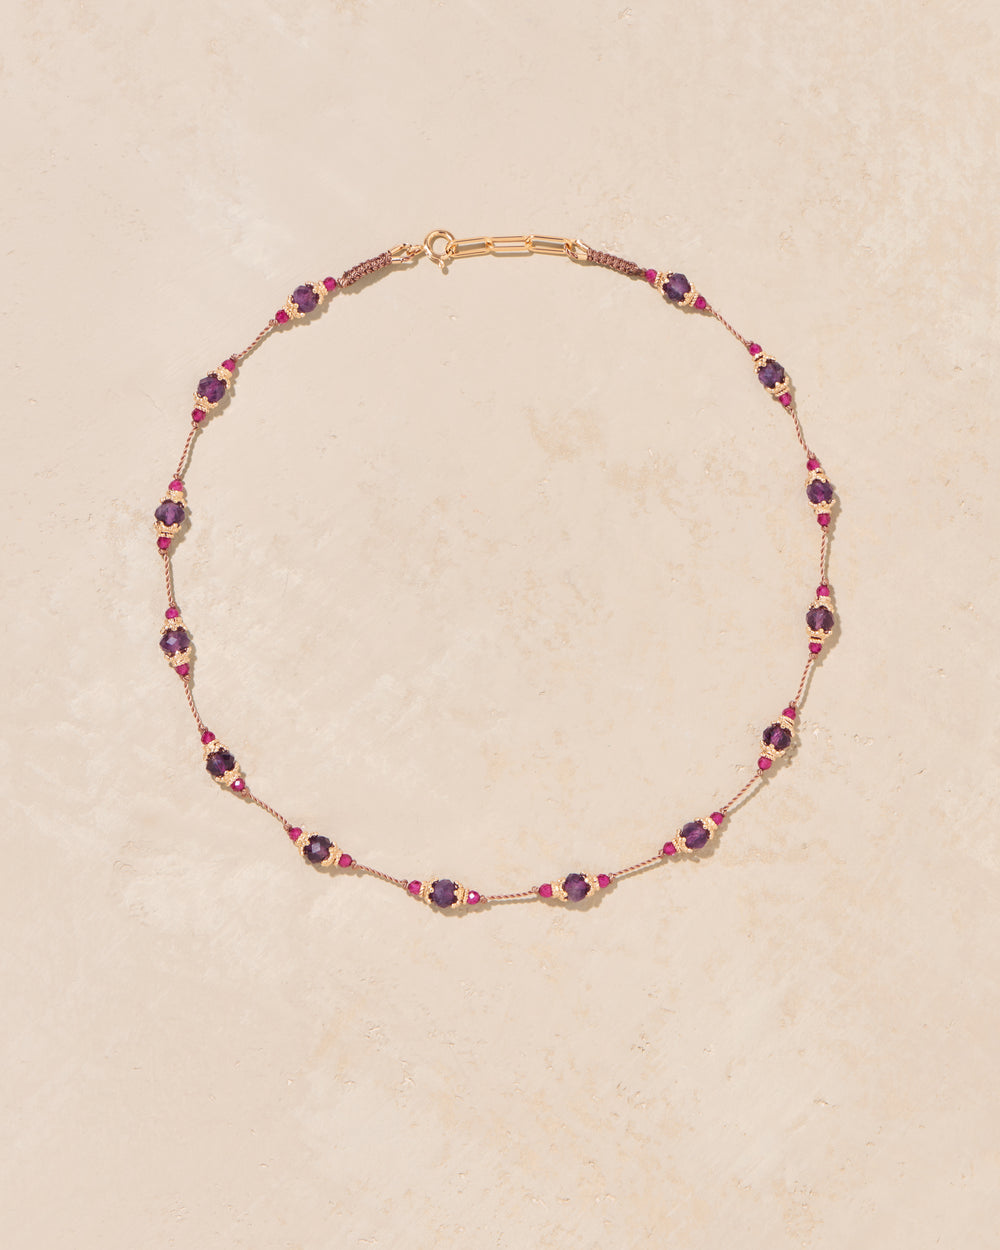 Sriphala necklace